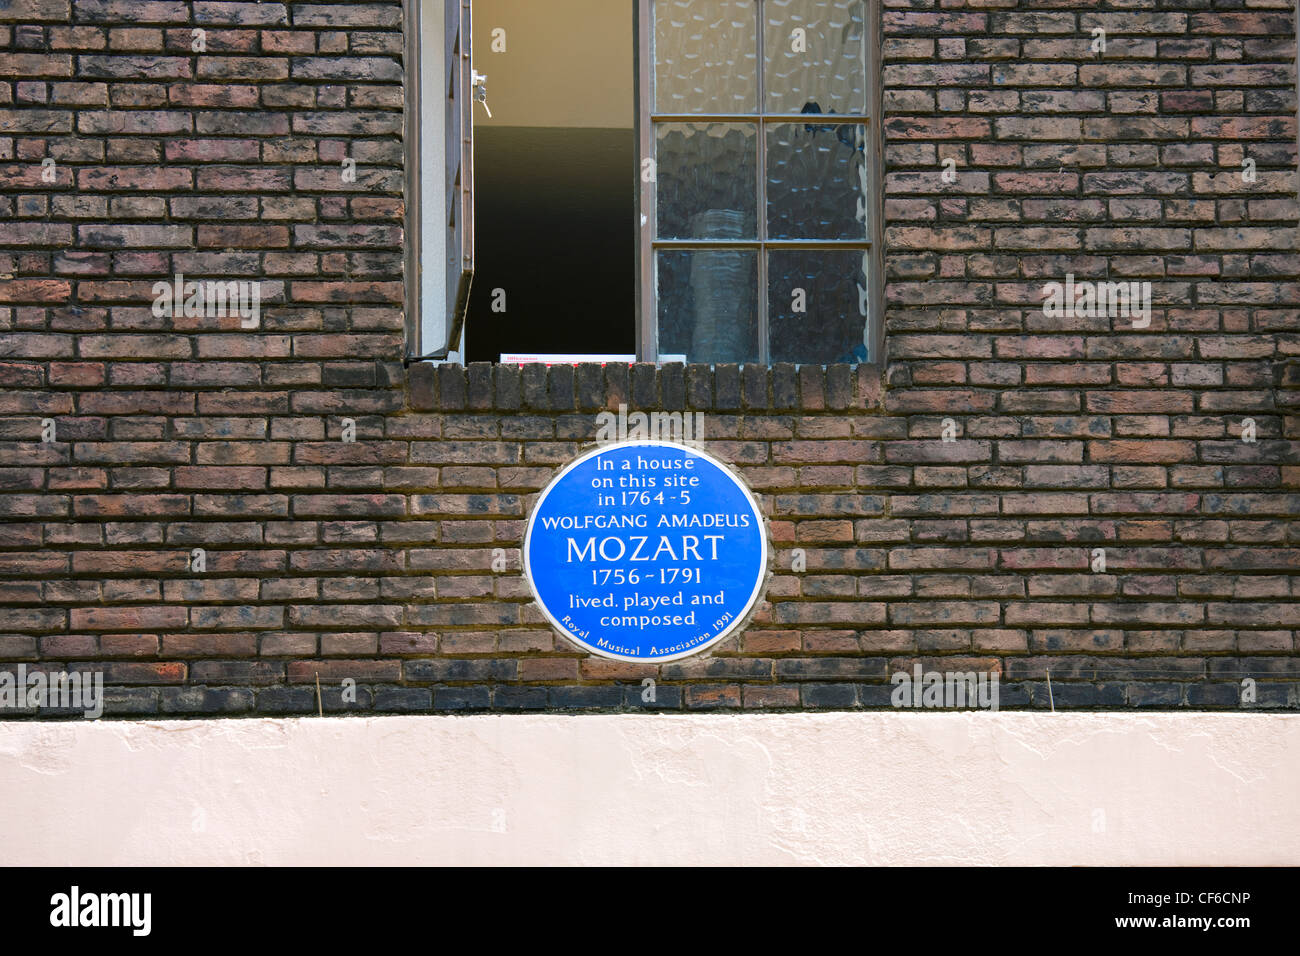 Un héritage anglais bleu plaque sur le mur d'une maison indiquant que Mozart a vécu, joué et composé sur ce site 1764-5. Banque D'Images